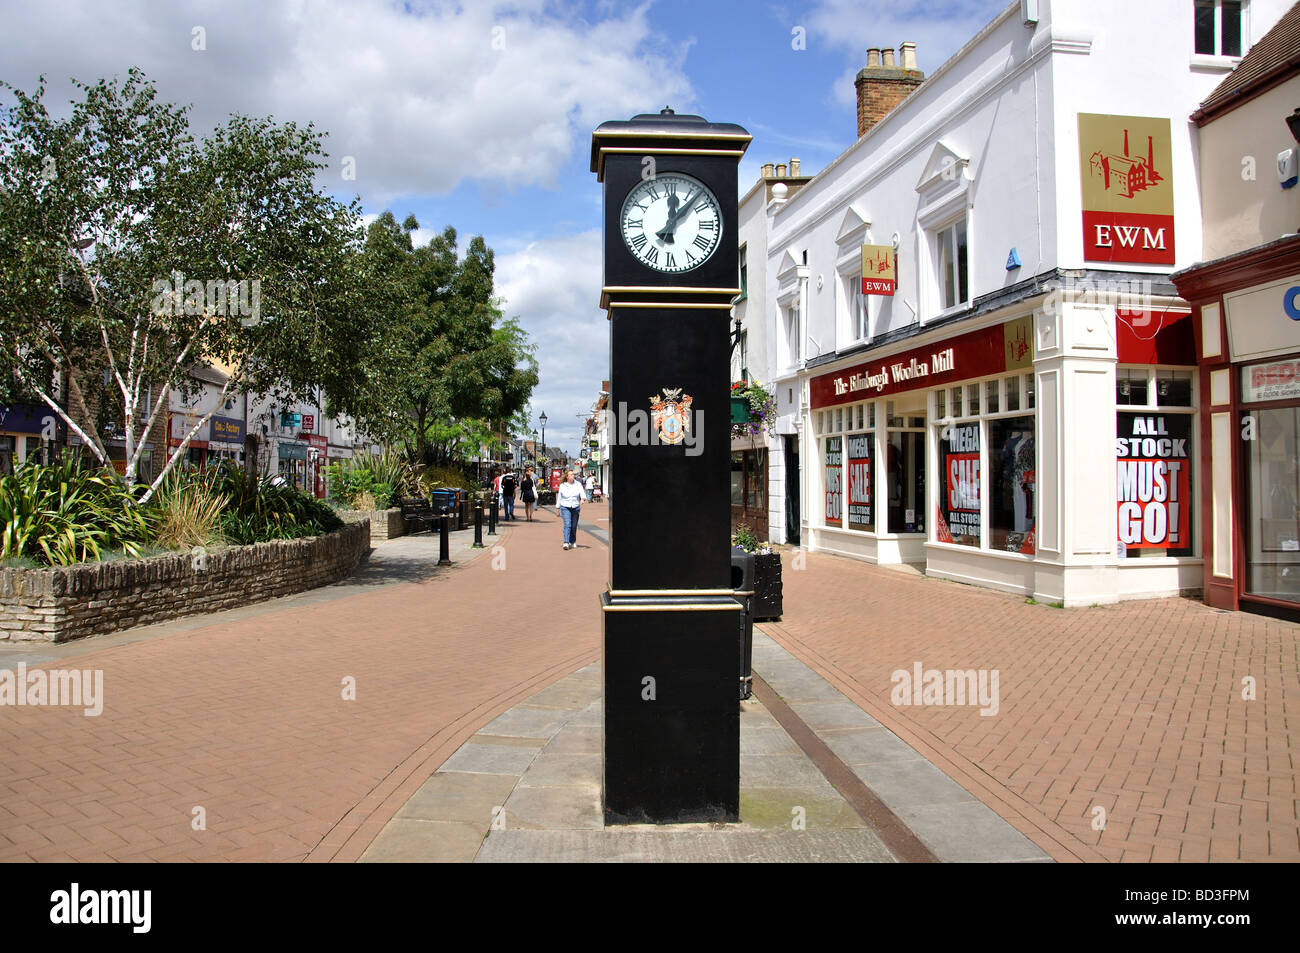 Stadt-Uhr, Fußgängerzone, Sheep Street, Bicester, Oxfordshire, England, Vereinigtes Königreich Stockfoto